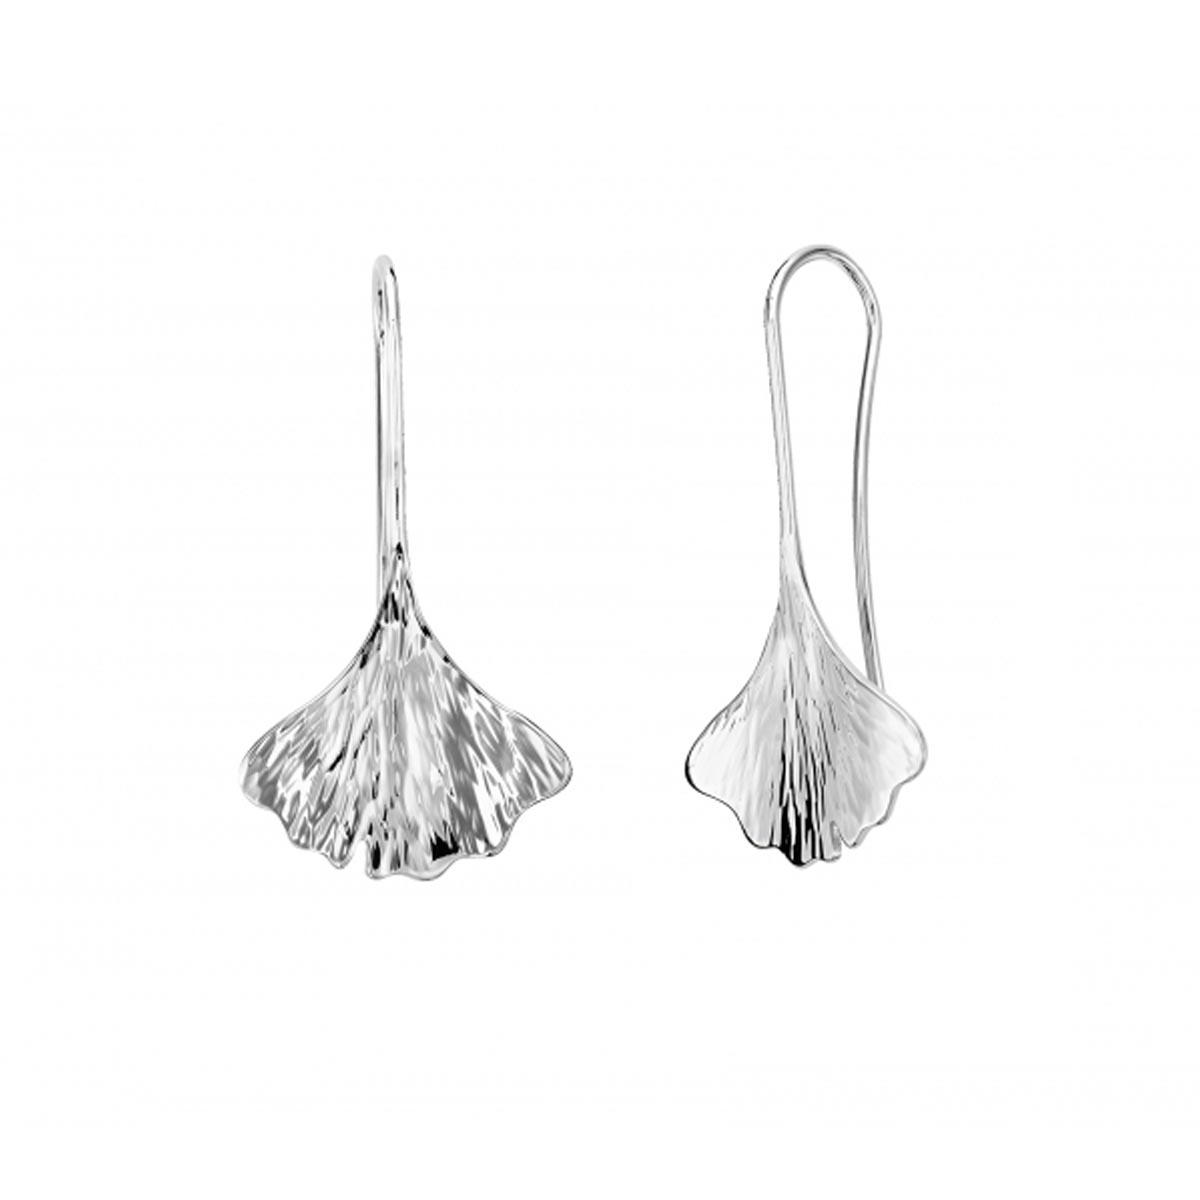 E.L. Designs Gingko Drop Earrings in Sterling Silver